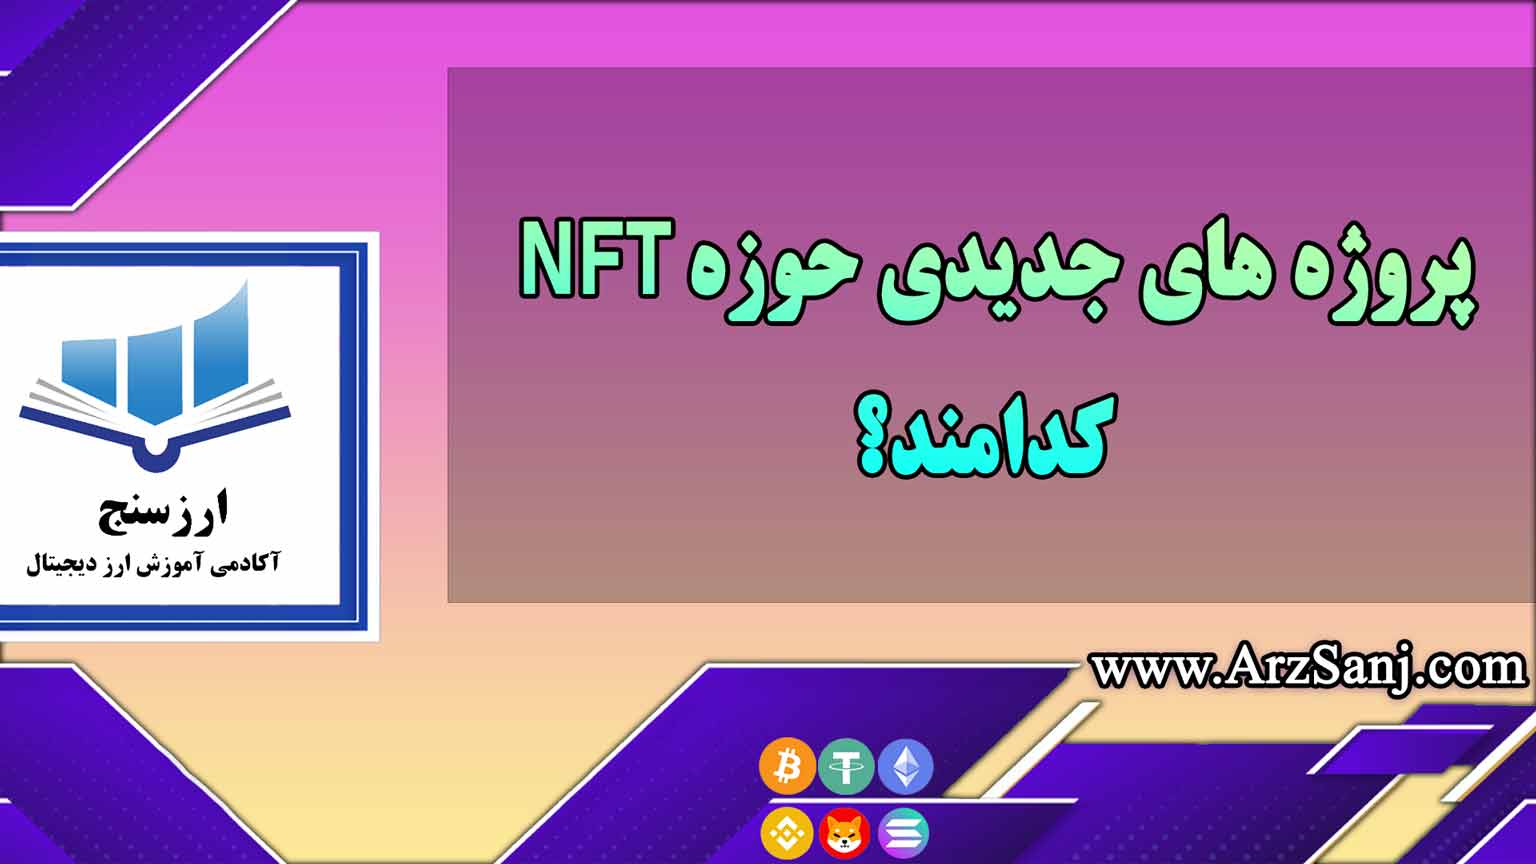 پروژه های جدیدی حوزه NFT کدامند؟